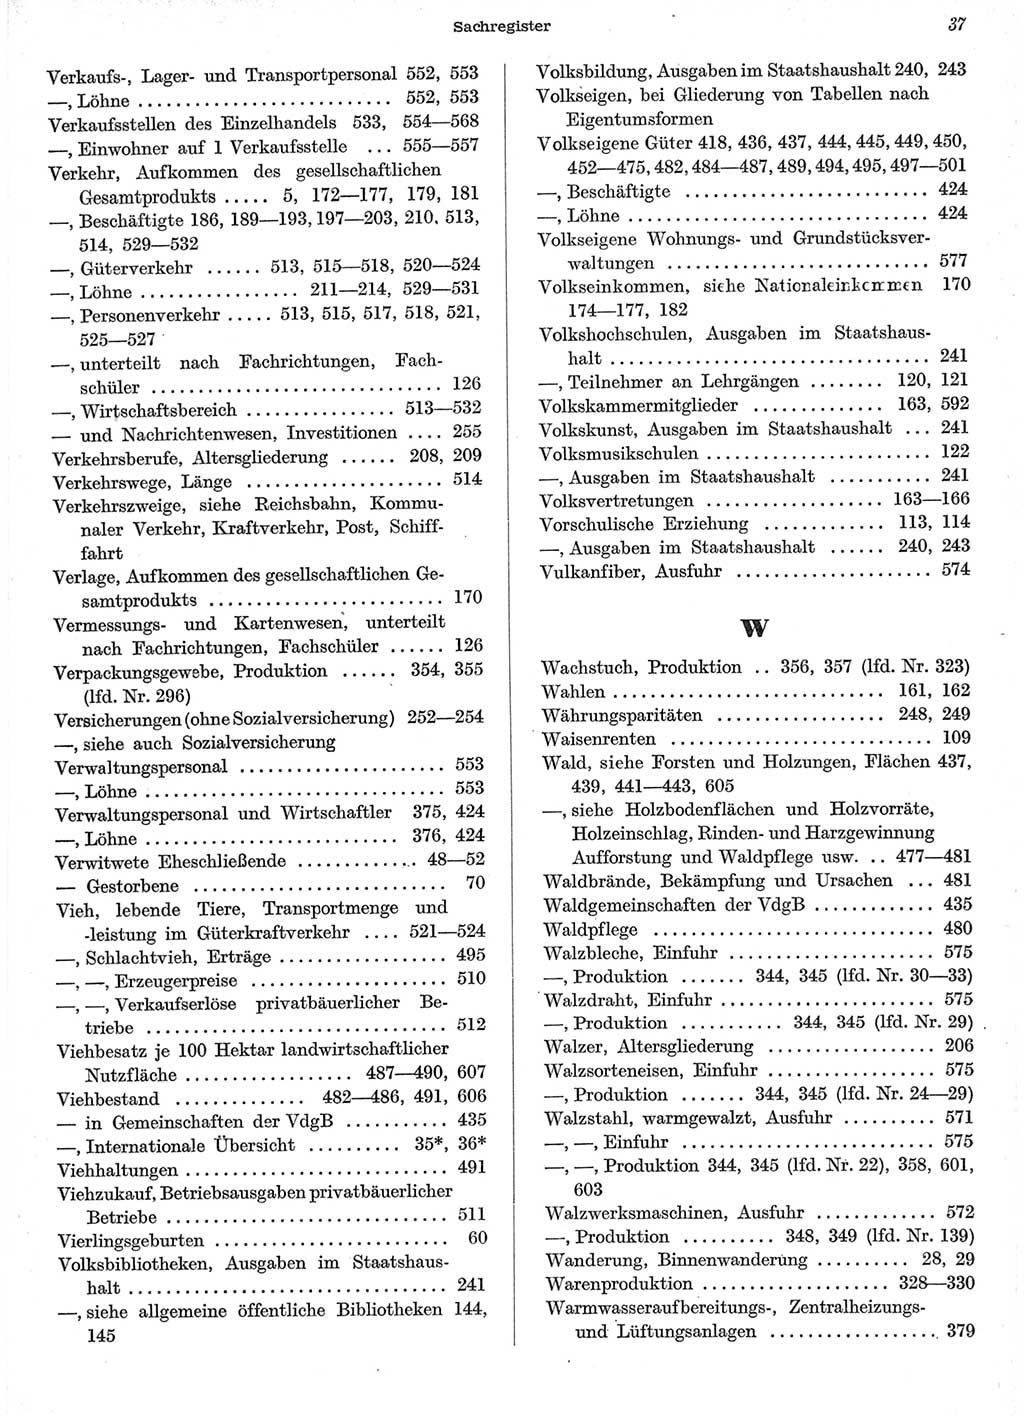 Statistisches Jahrbuch der Deutschen Demokratischen Republik (DDR) 1958, Seite 37 (Stat. Jb. DDR 1958, S. 37)